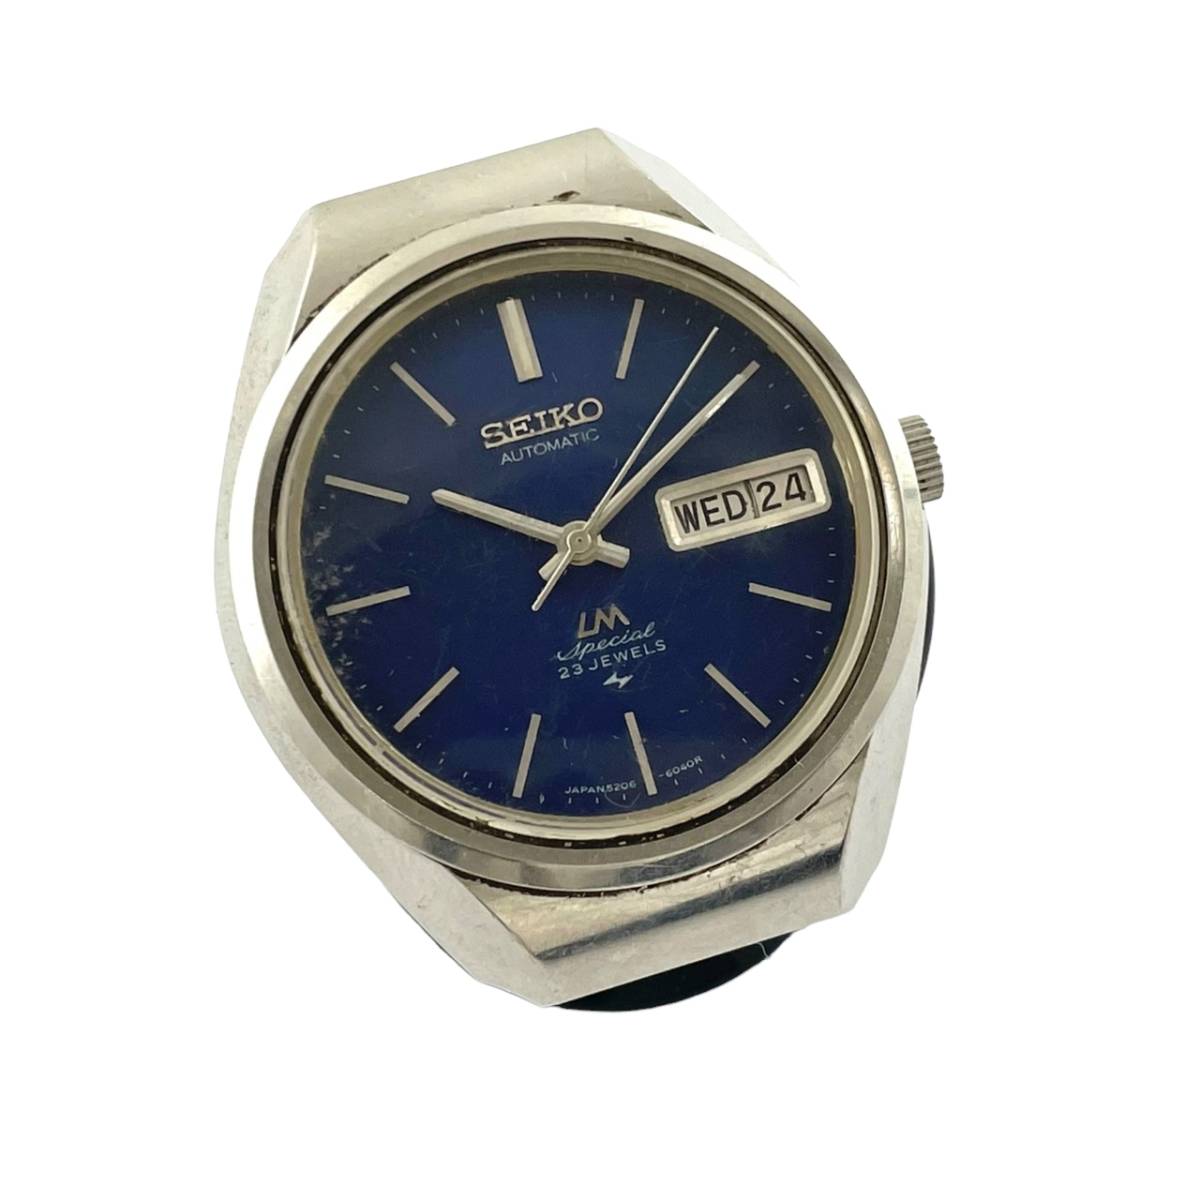 動作品 SEIKO LM ロードマチックスペシャル 腕時計 5206-6120 - 腕時計